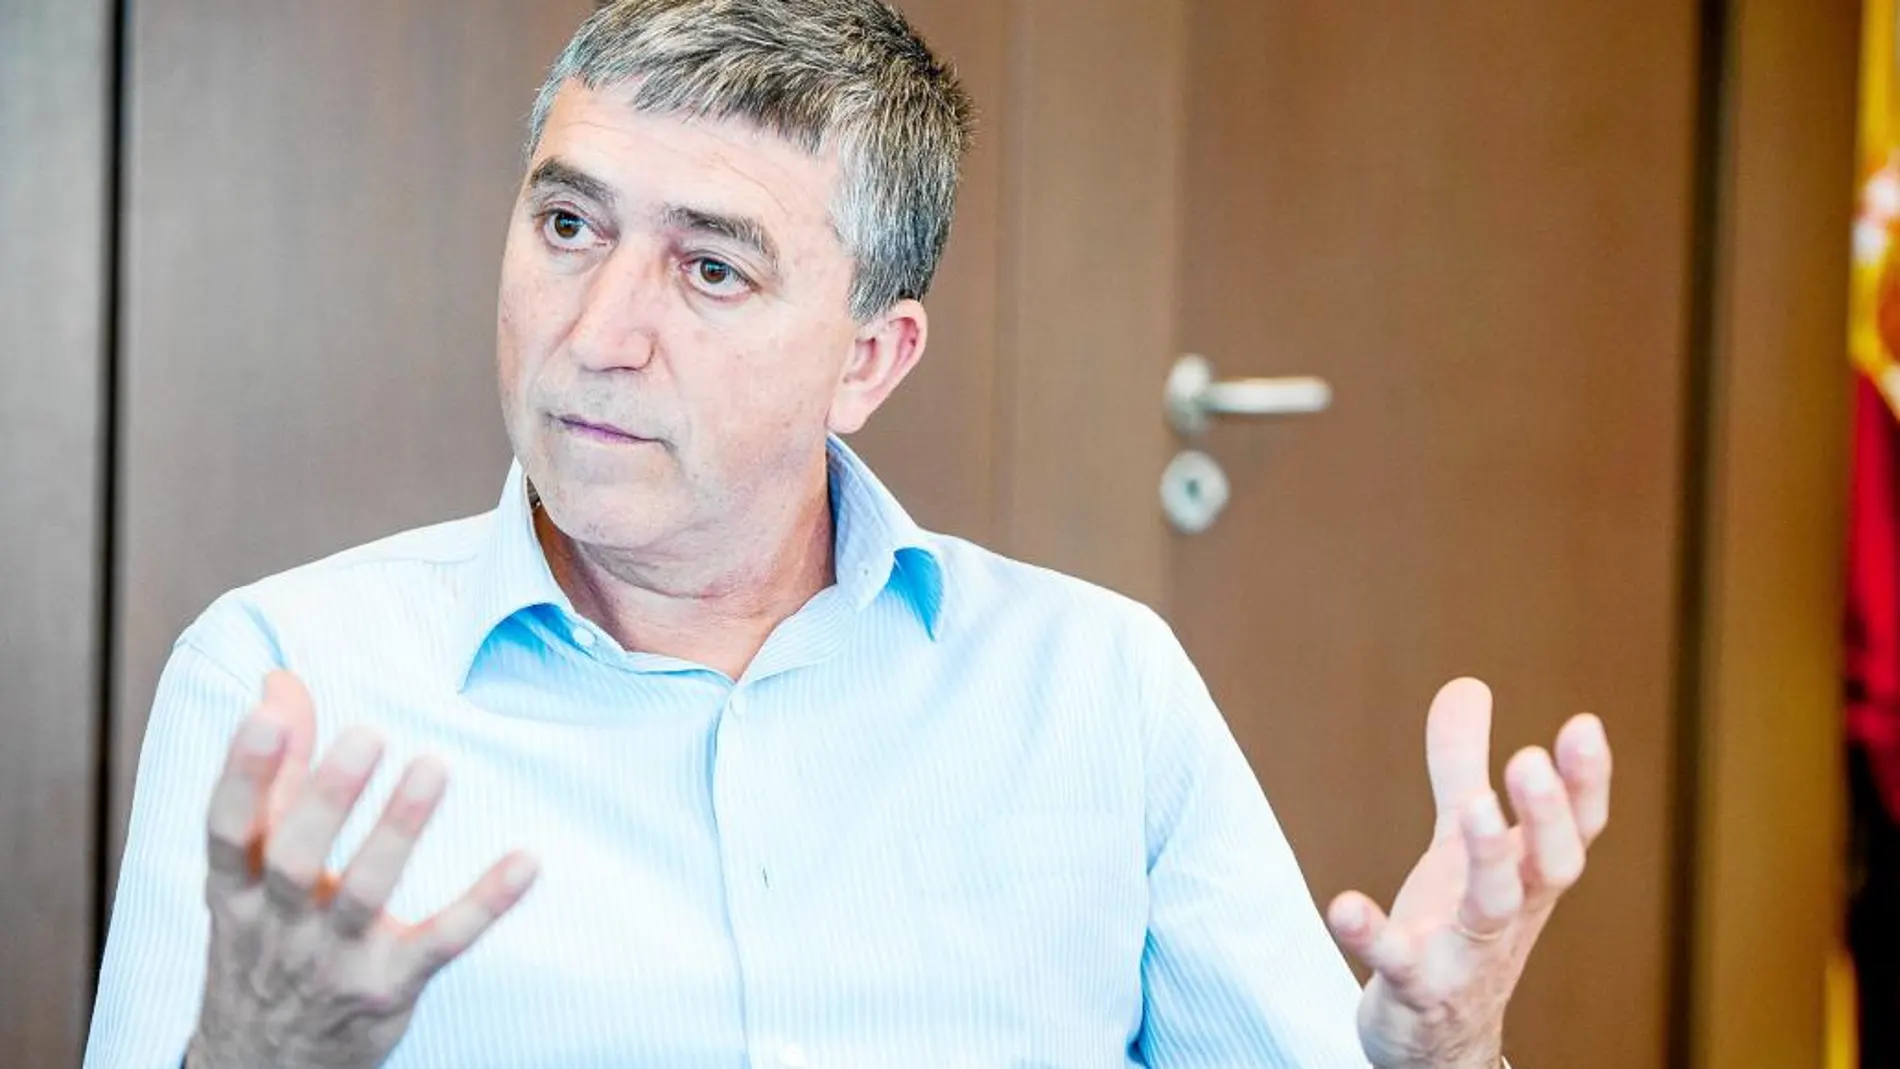 El conseller de Economía Sostenible, Rafael Climent, durante una entrevista concedida a LA RAZÓN